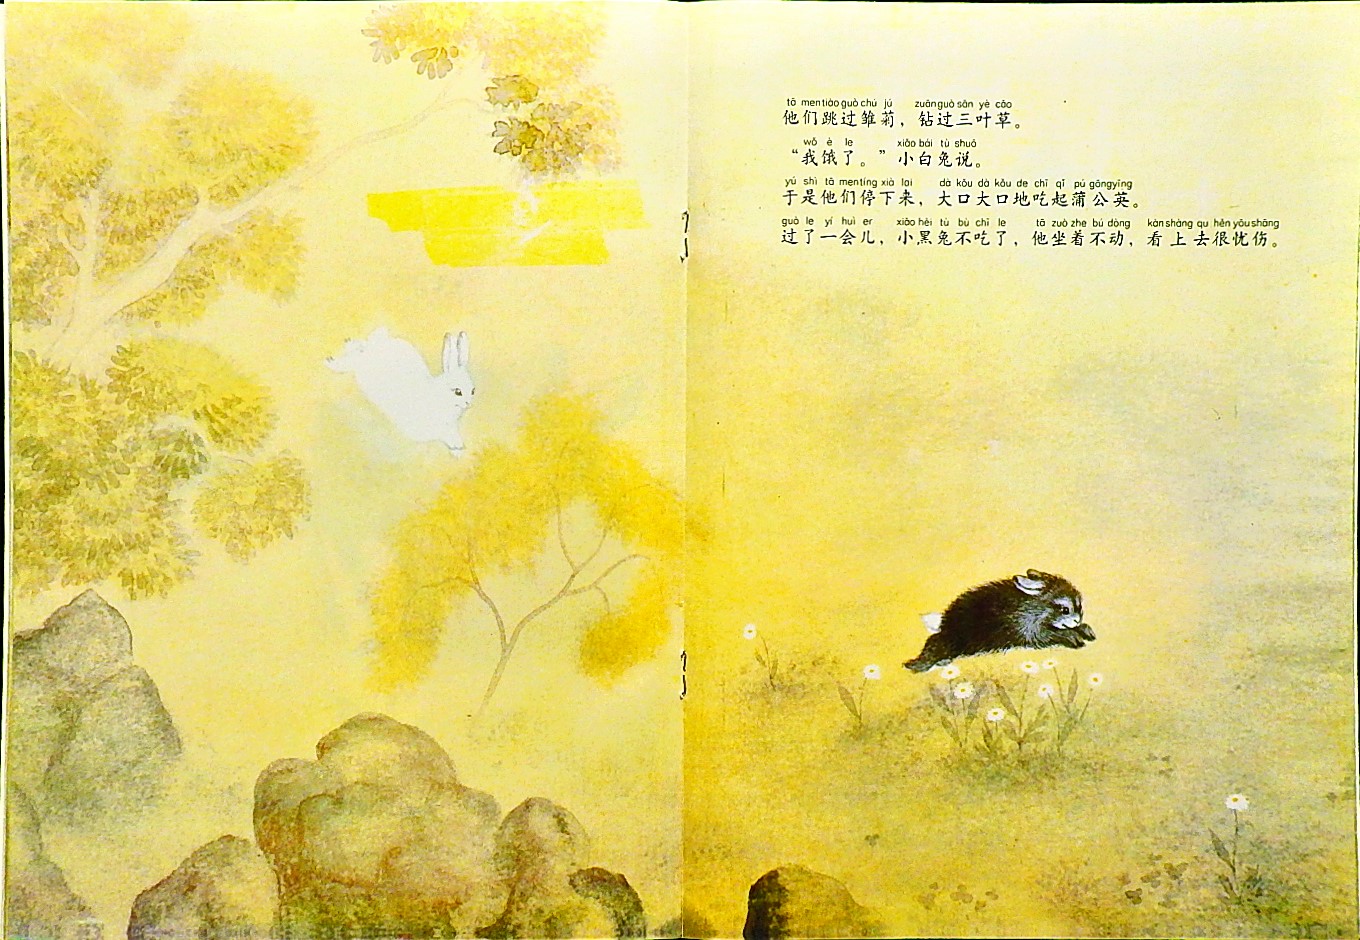 黑兔和白兔 (09),绘本,绘本故事,绘本阅读,故事书,童书,图画书,课外阅读